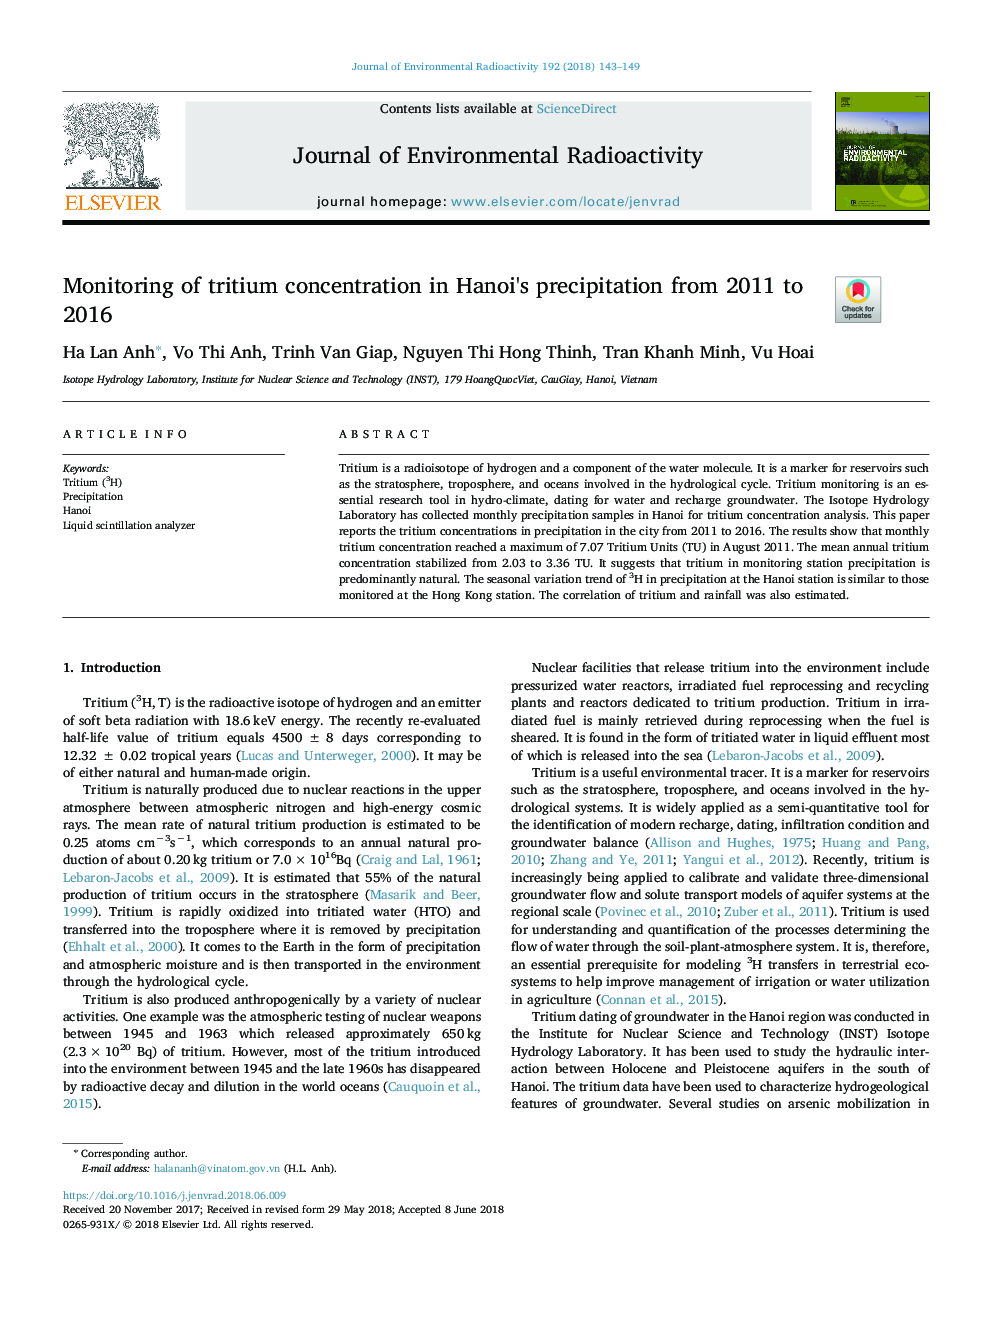 نظارت بر غلظت تریتیوم در بارش هانوی از سال 2011 تا 2016 